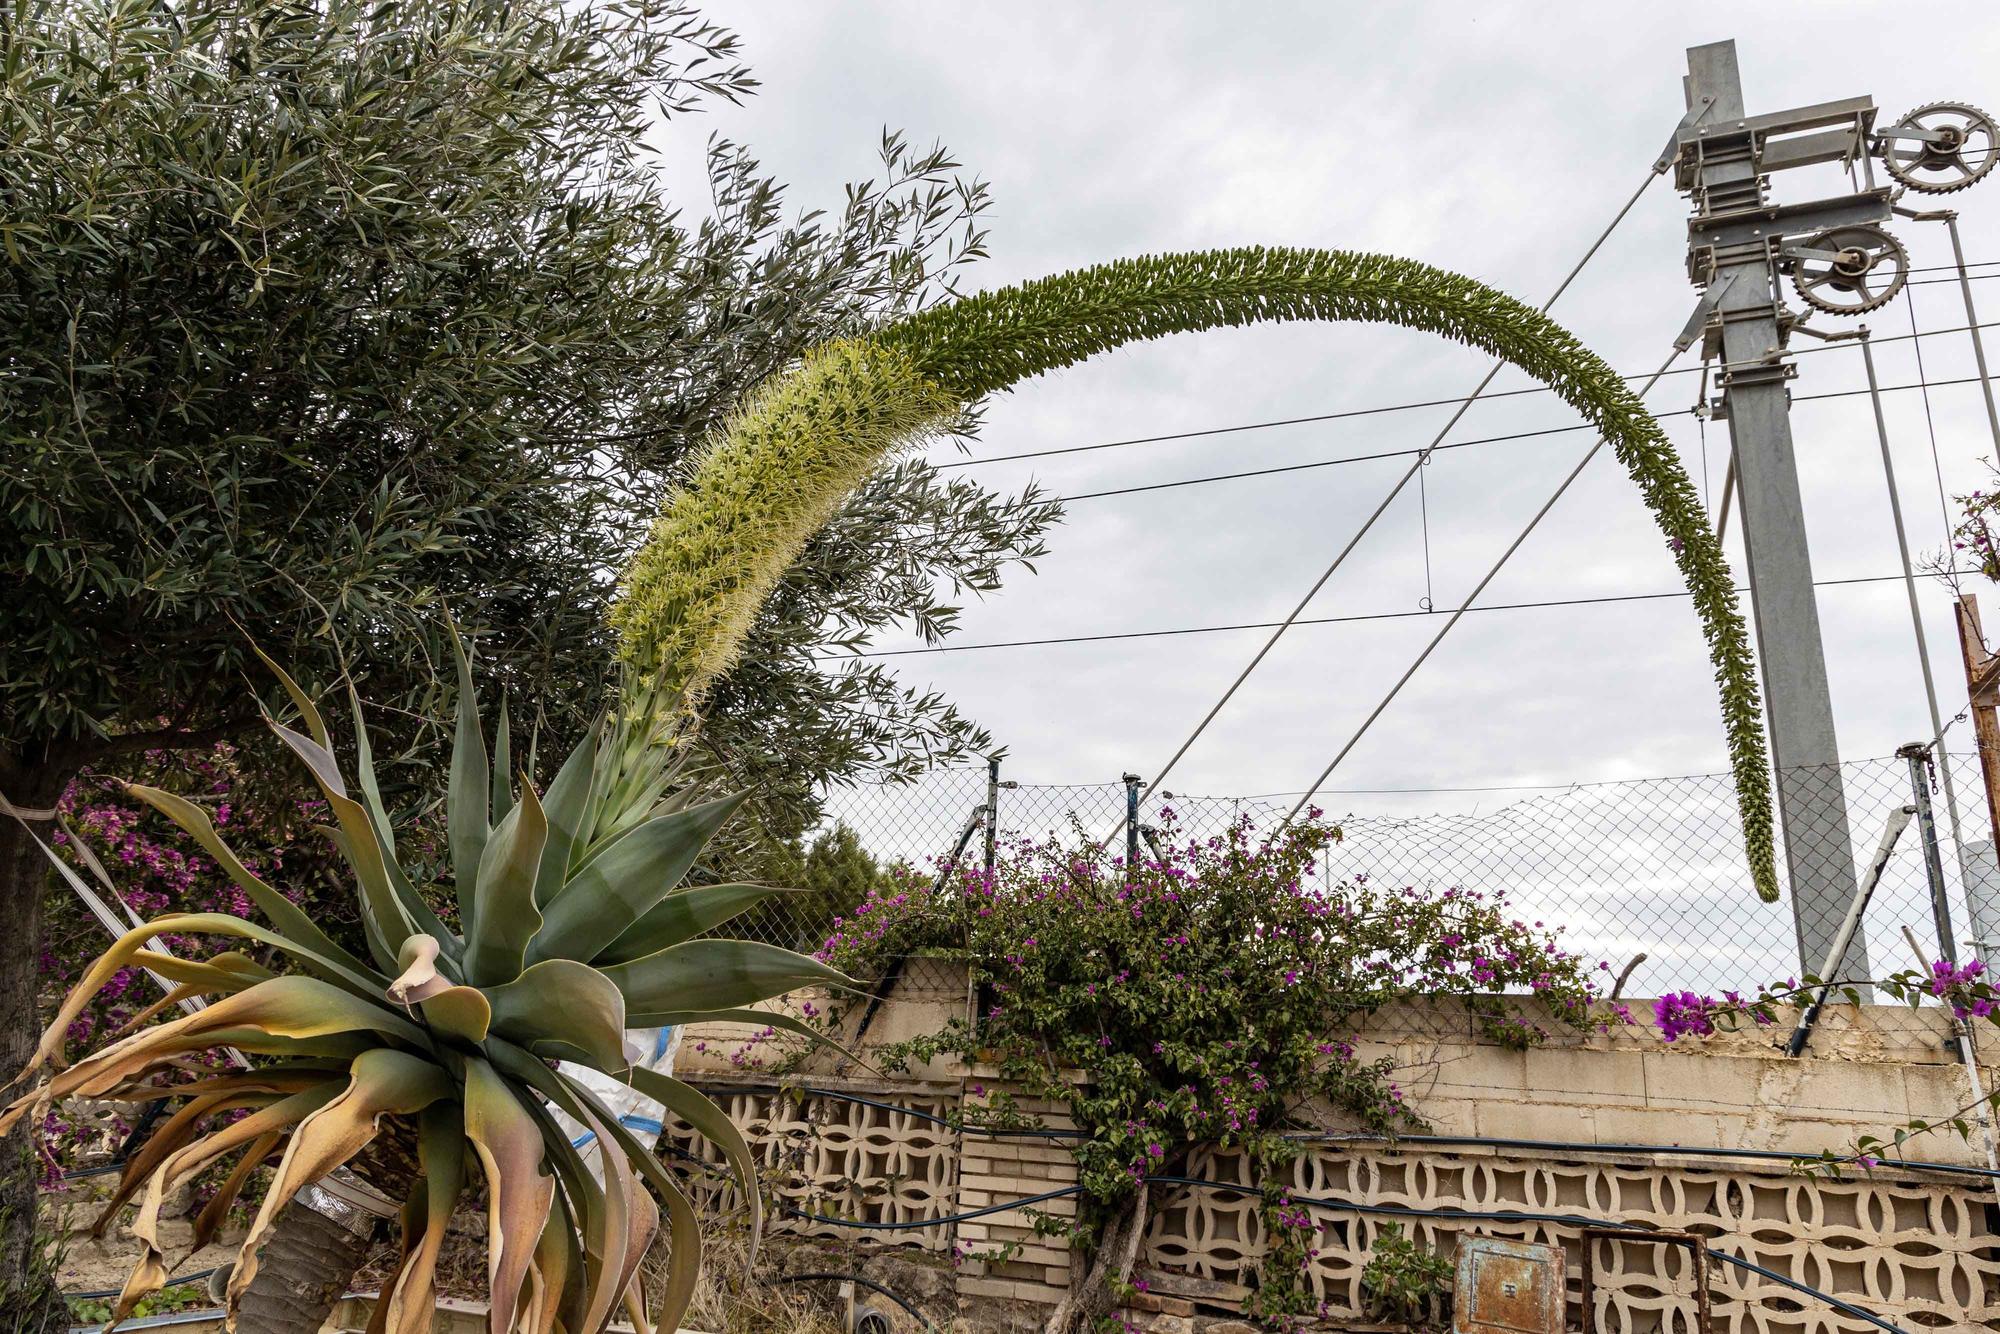 Una espectacular floración de un ejemplar de "agave attenuata" sorprende en El Campello